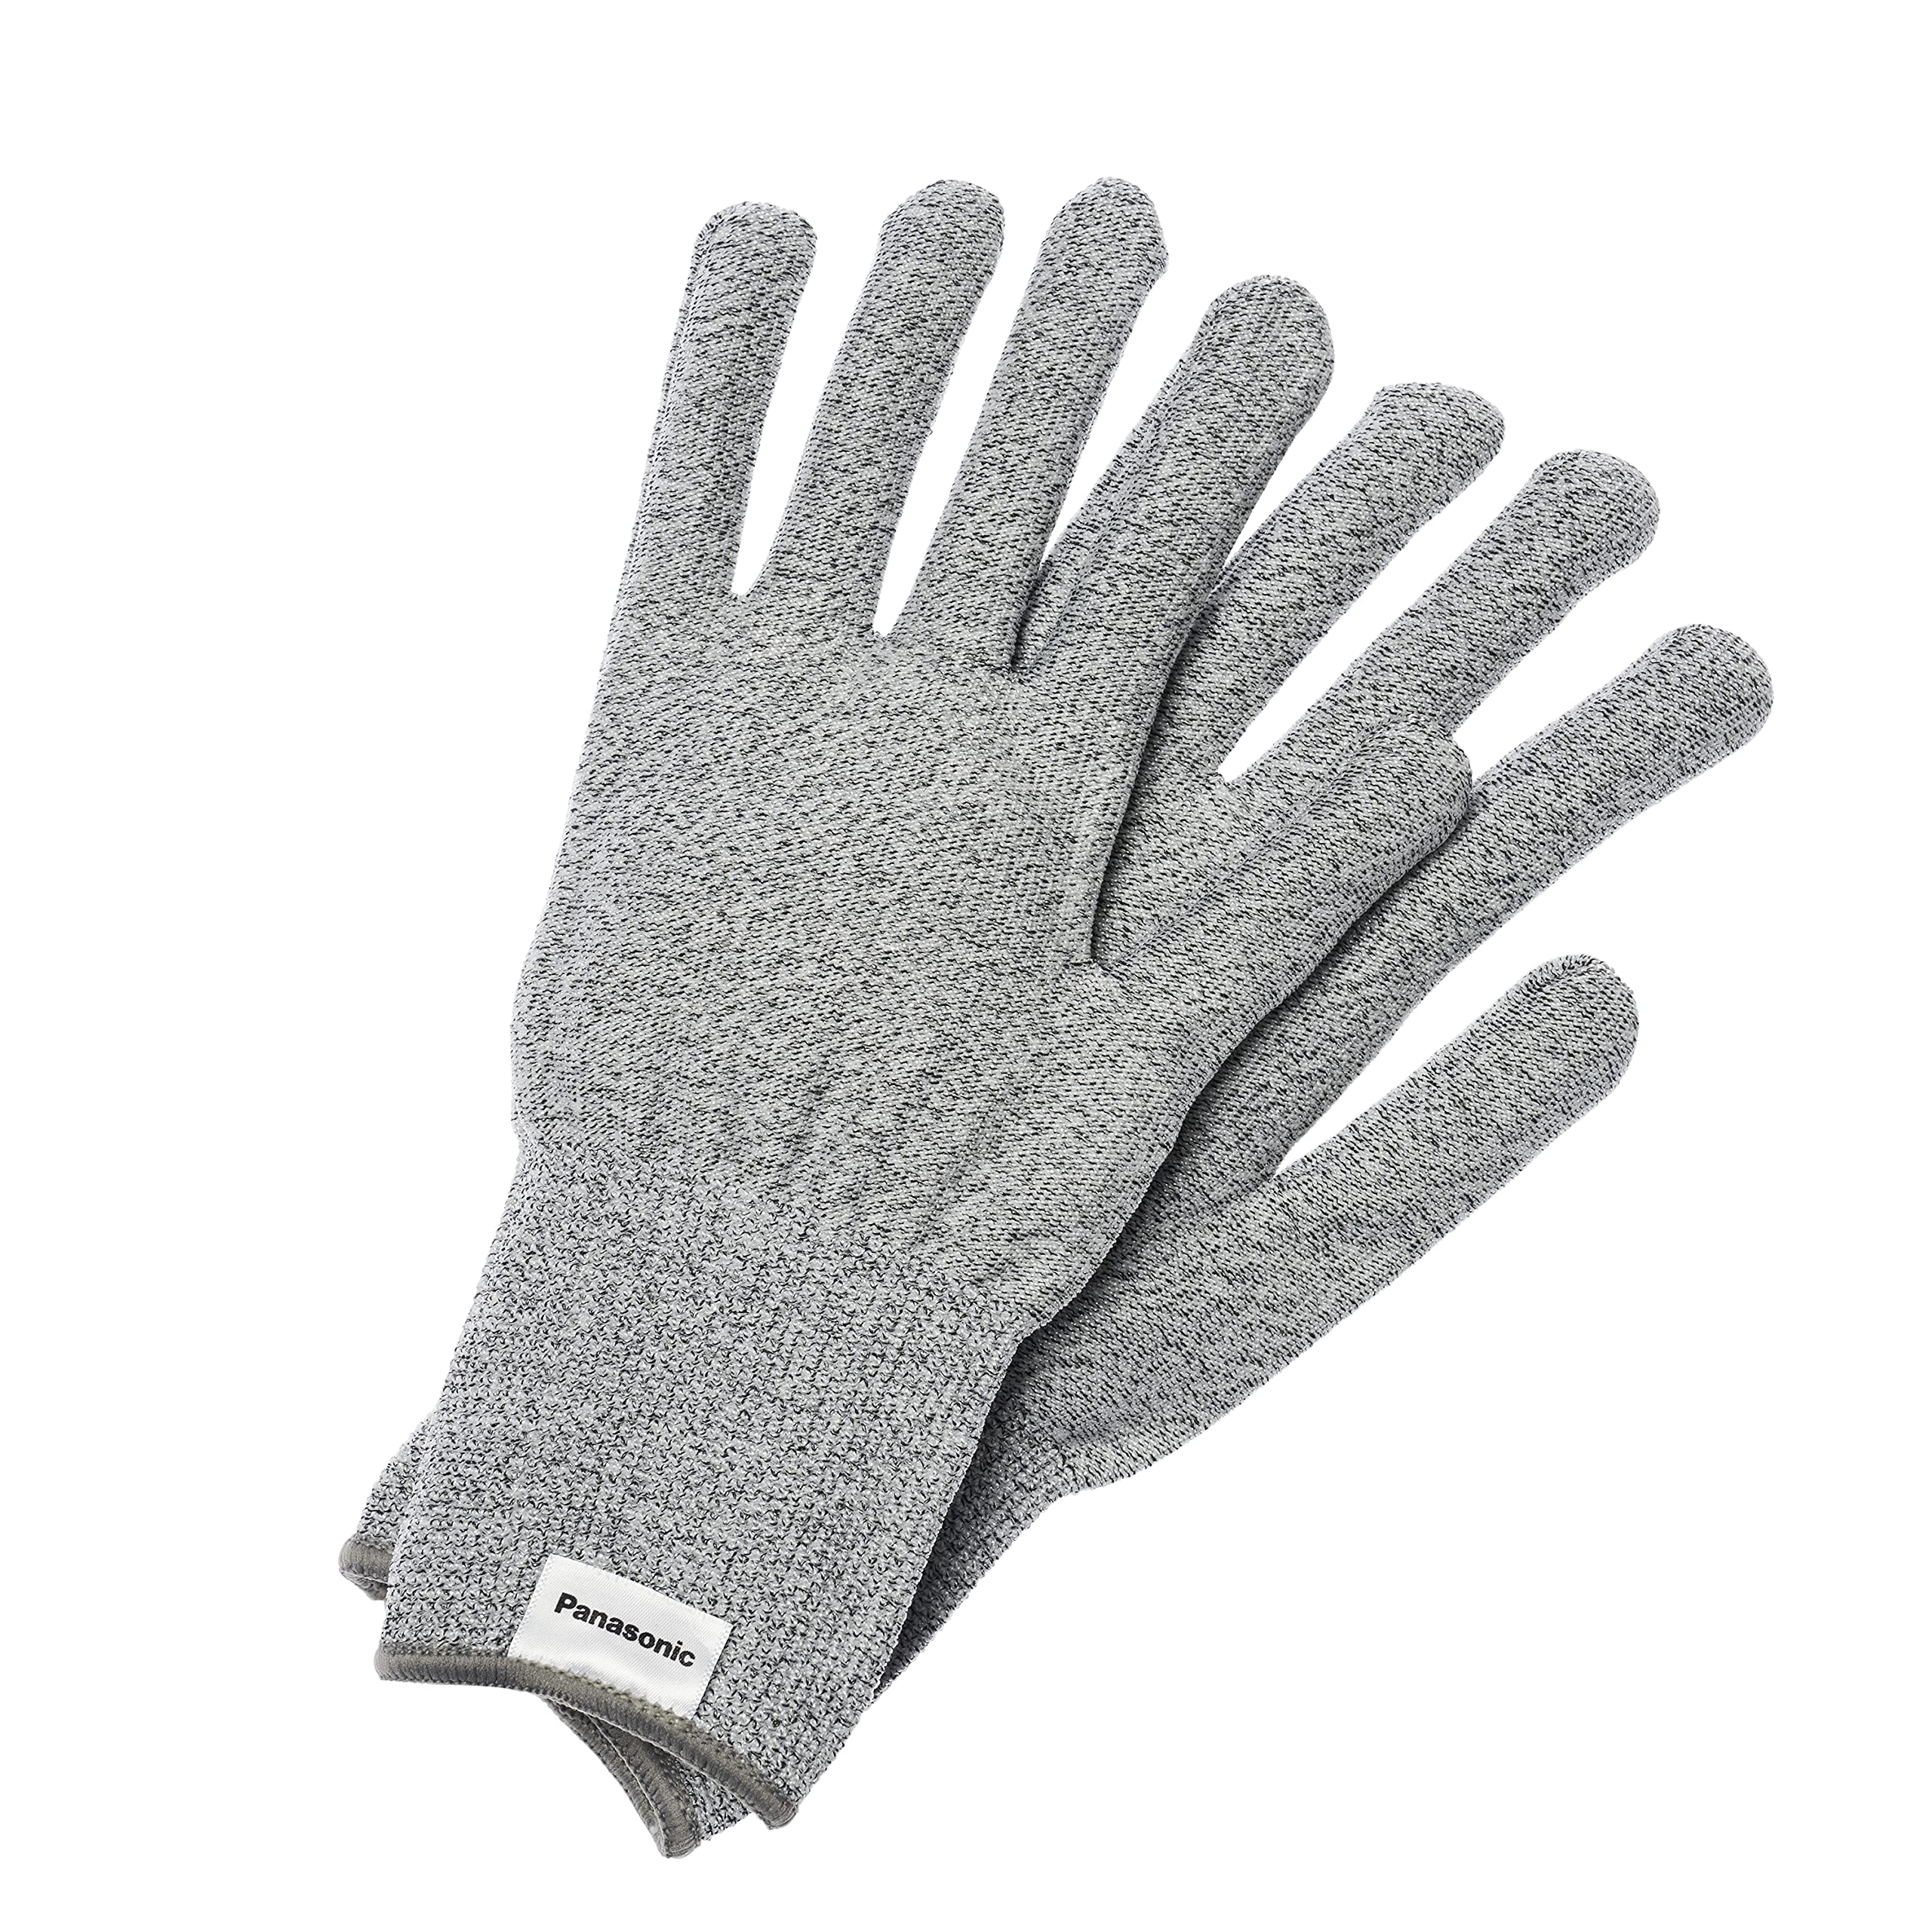 パナソニック タングステン耐切創手袋 Lサイズ 白熱電球のフィラメント技術から生まれた手袋 高い耐切創性(レベルE) 洗濯OK WKTG0LH1AX グレー